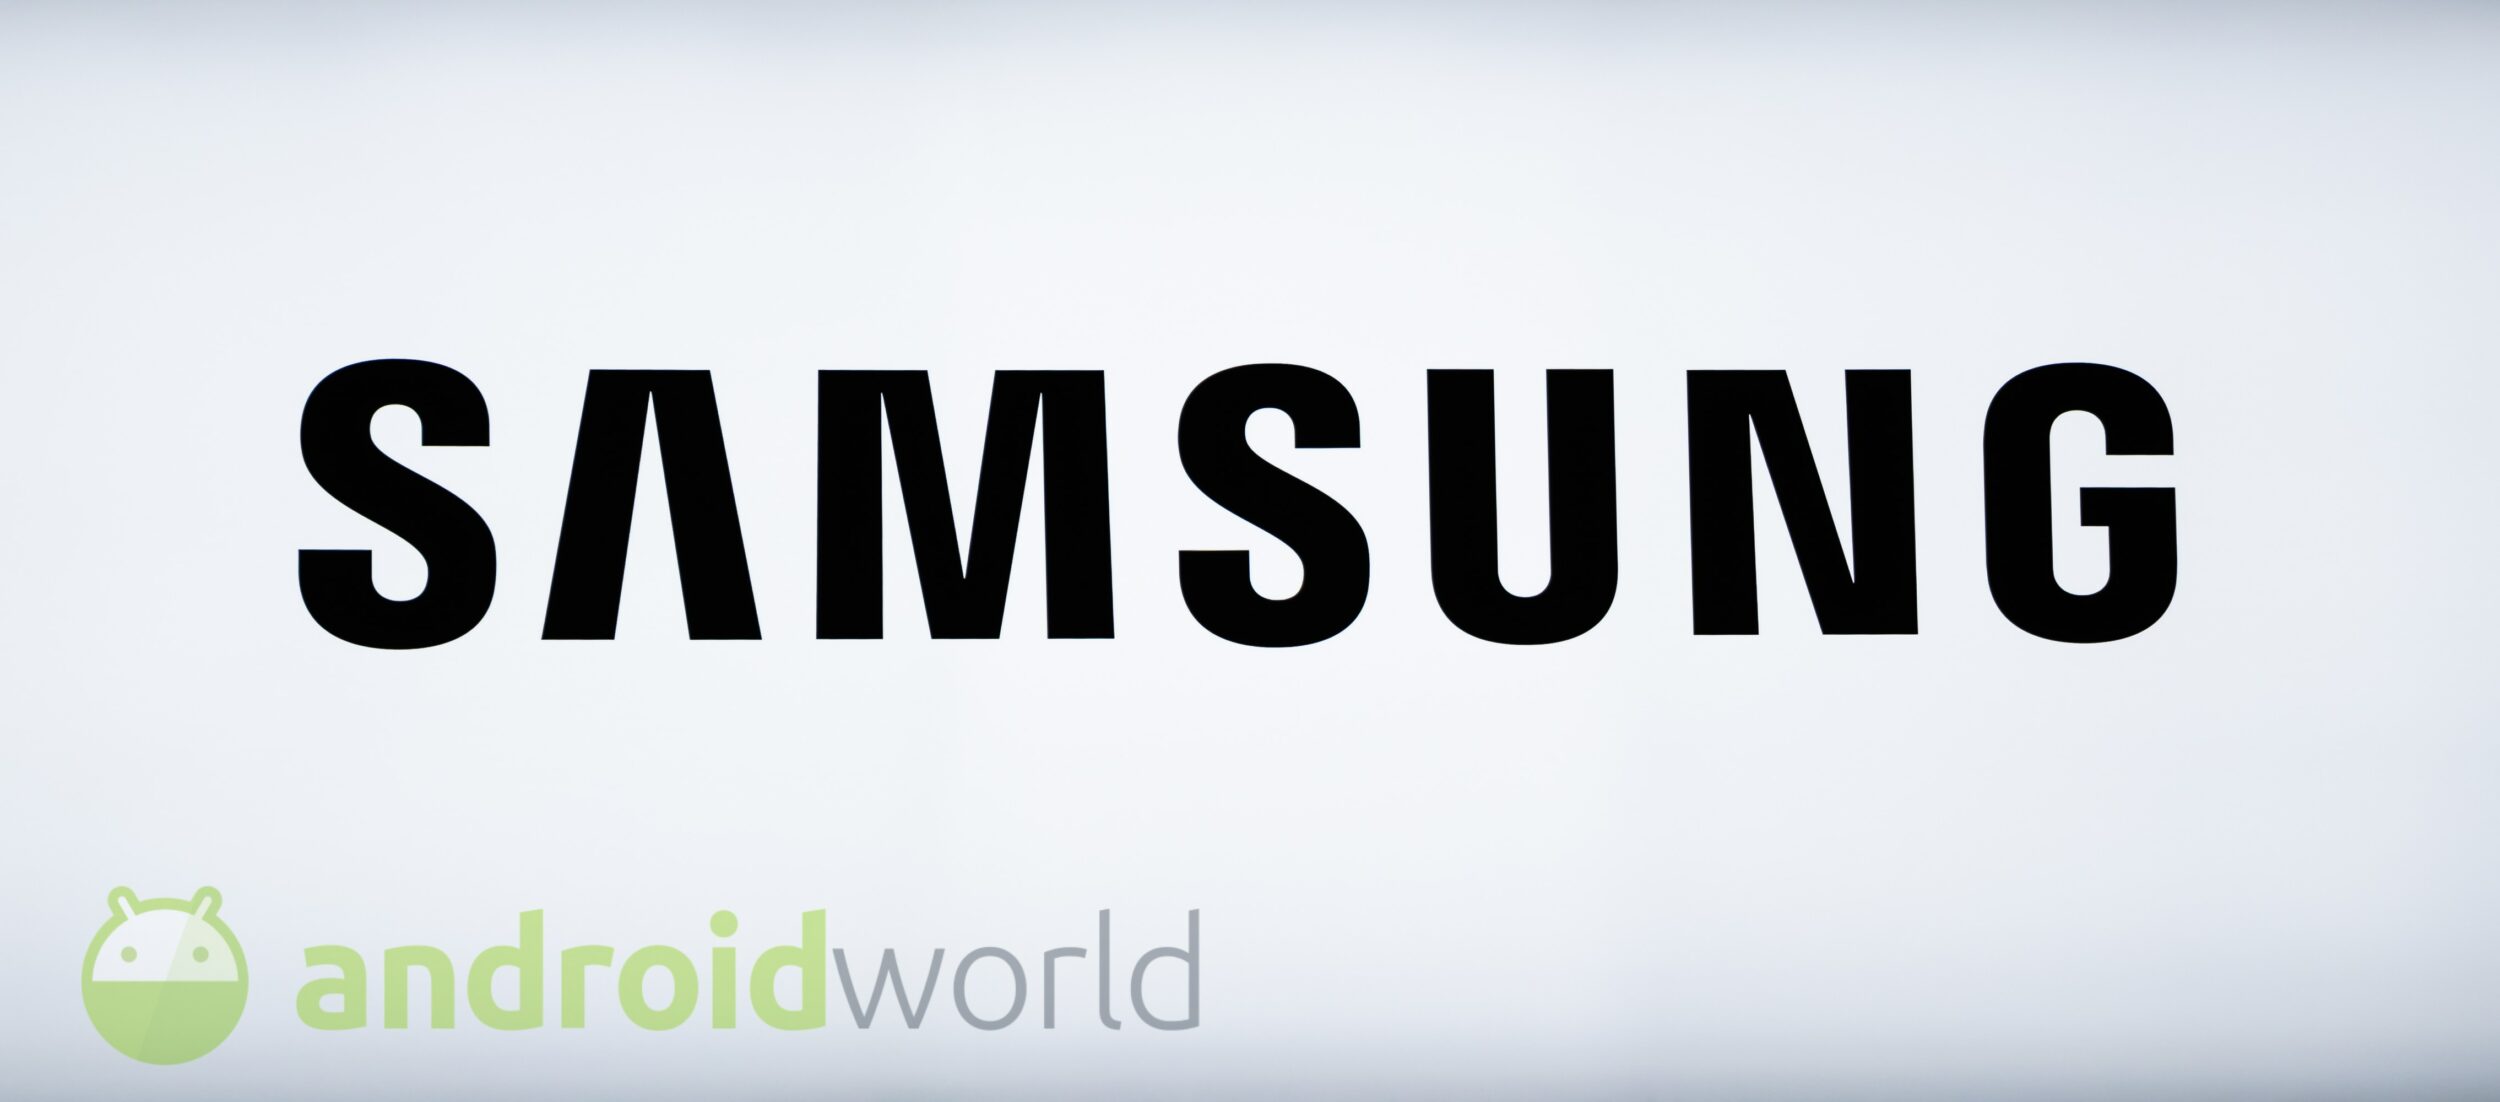 Samsung Exynos: azienda al lavoro su nuovi chip di fascia media e alta